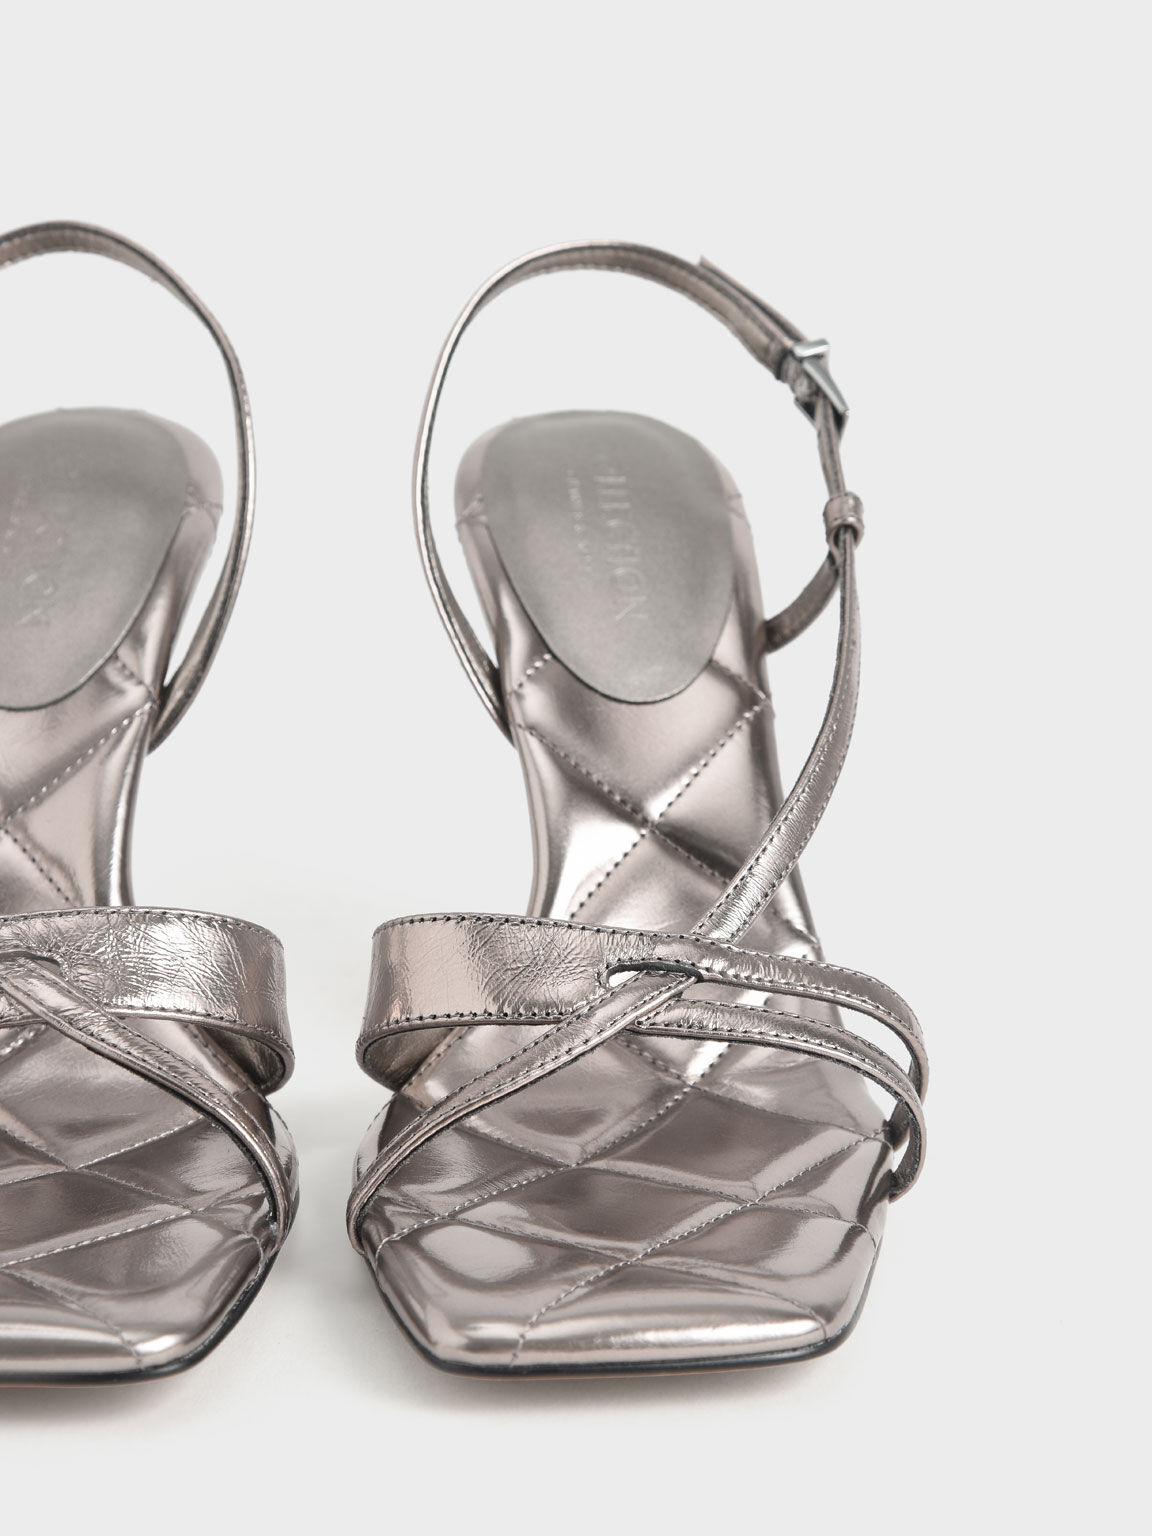 Sandal Wrinkled Leather Sculptural Heel, Silver, hi-res